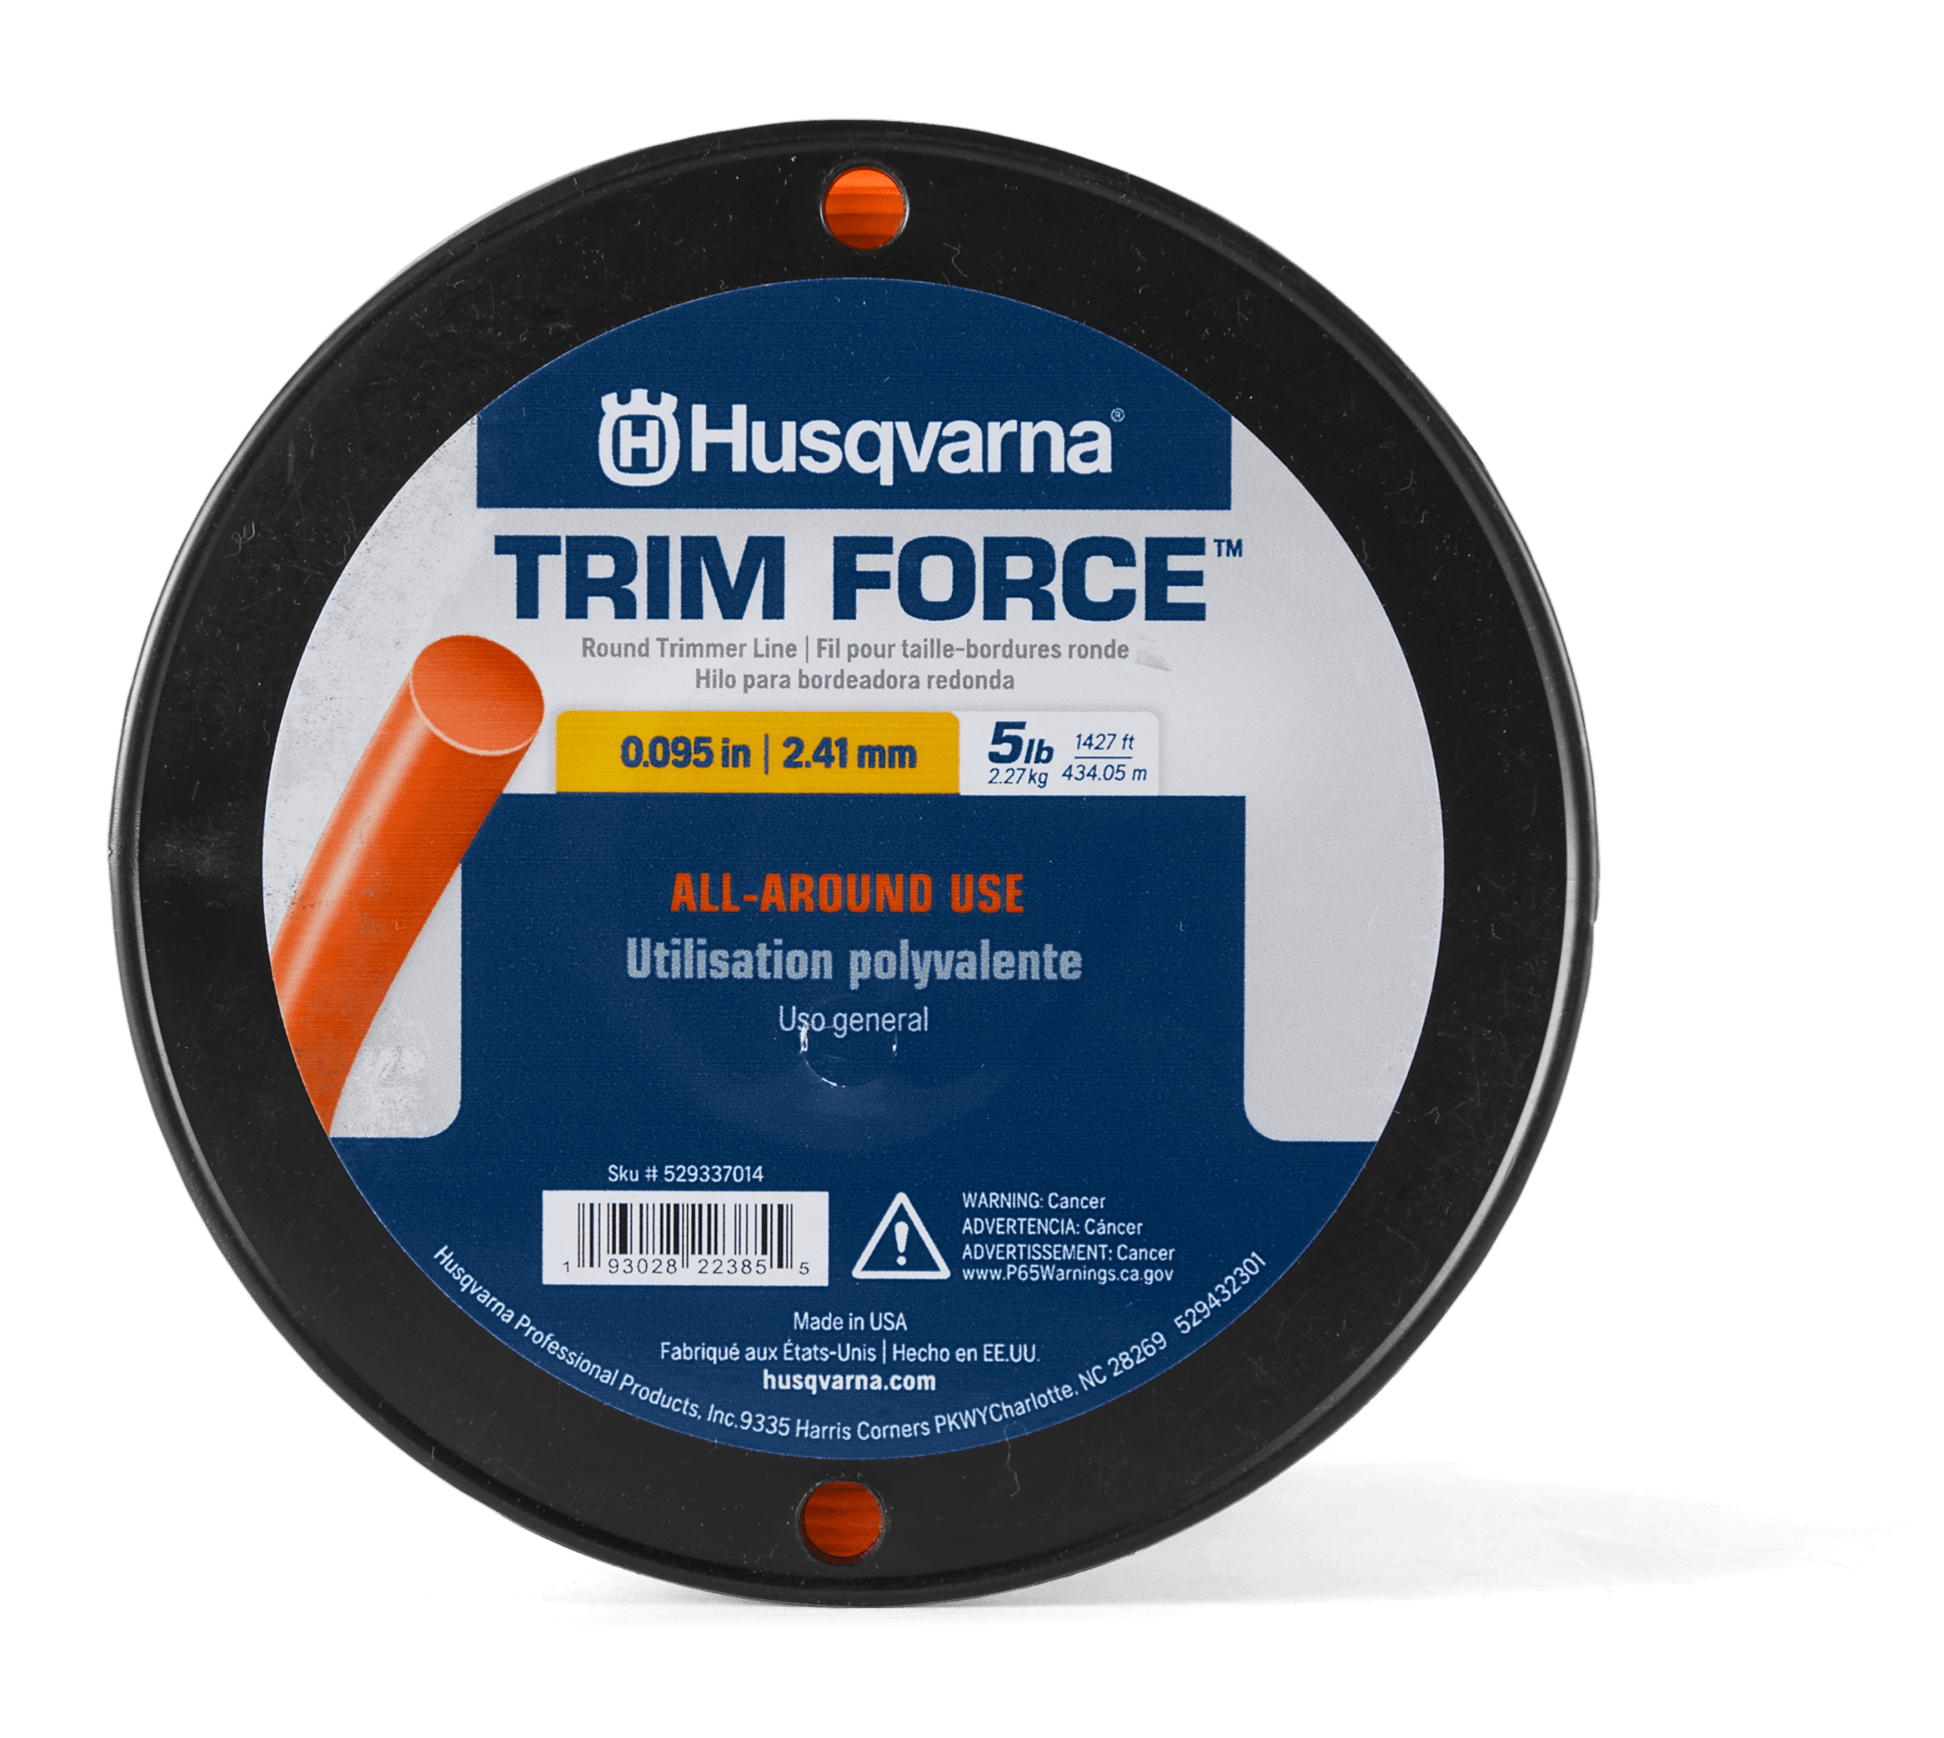 Trimmer Line Trim Force